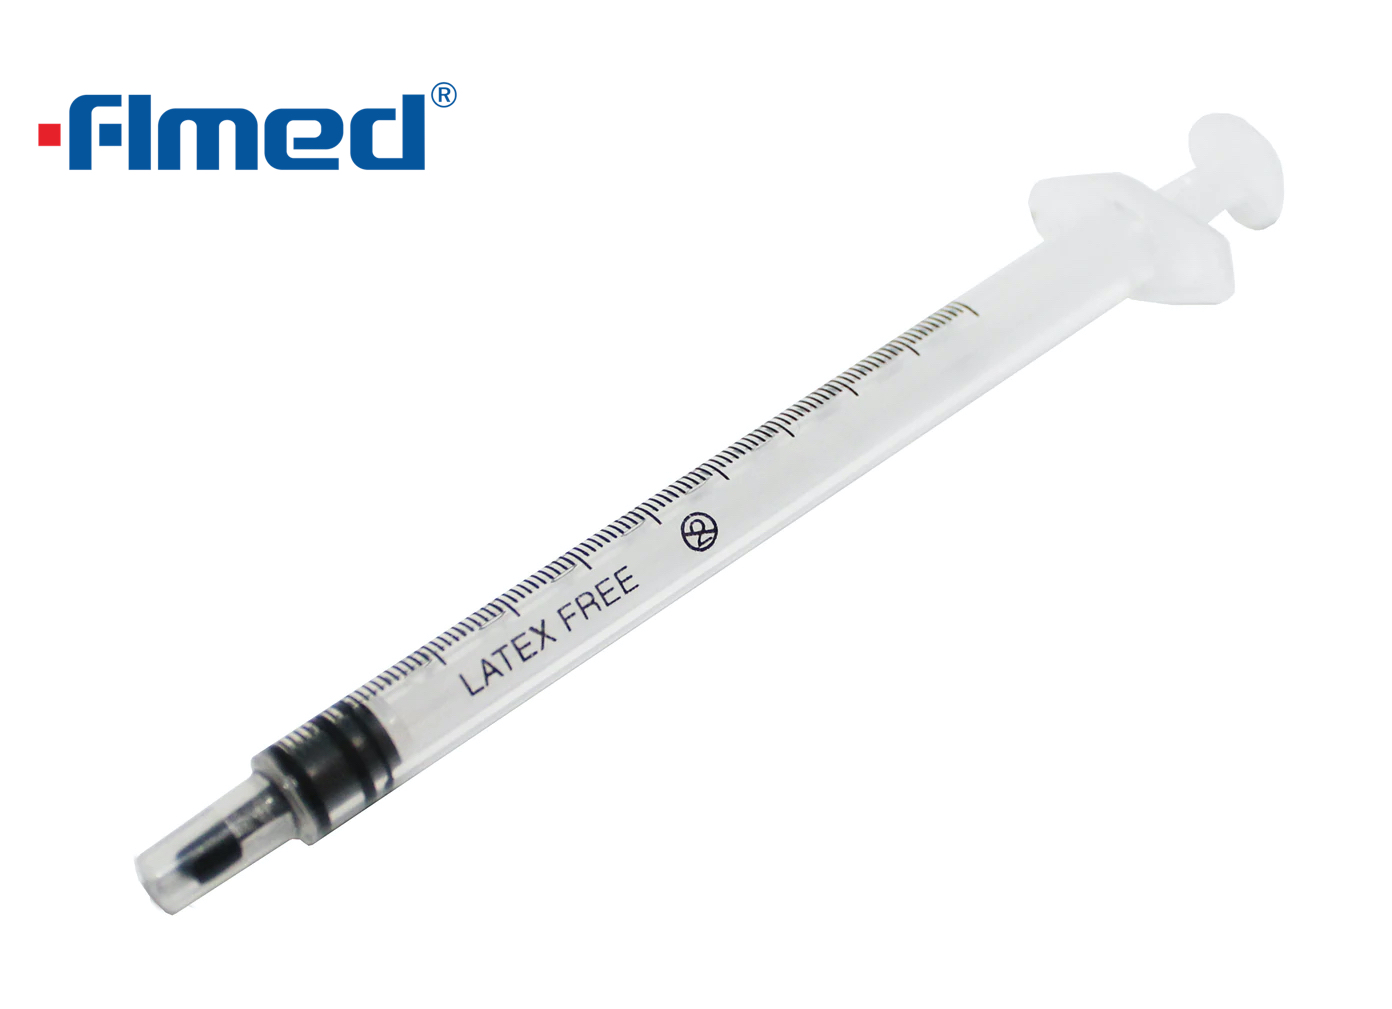 1ml Syringe With 25G Hypodermic Needle